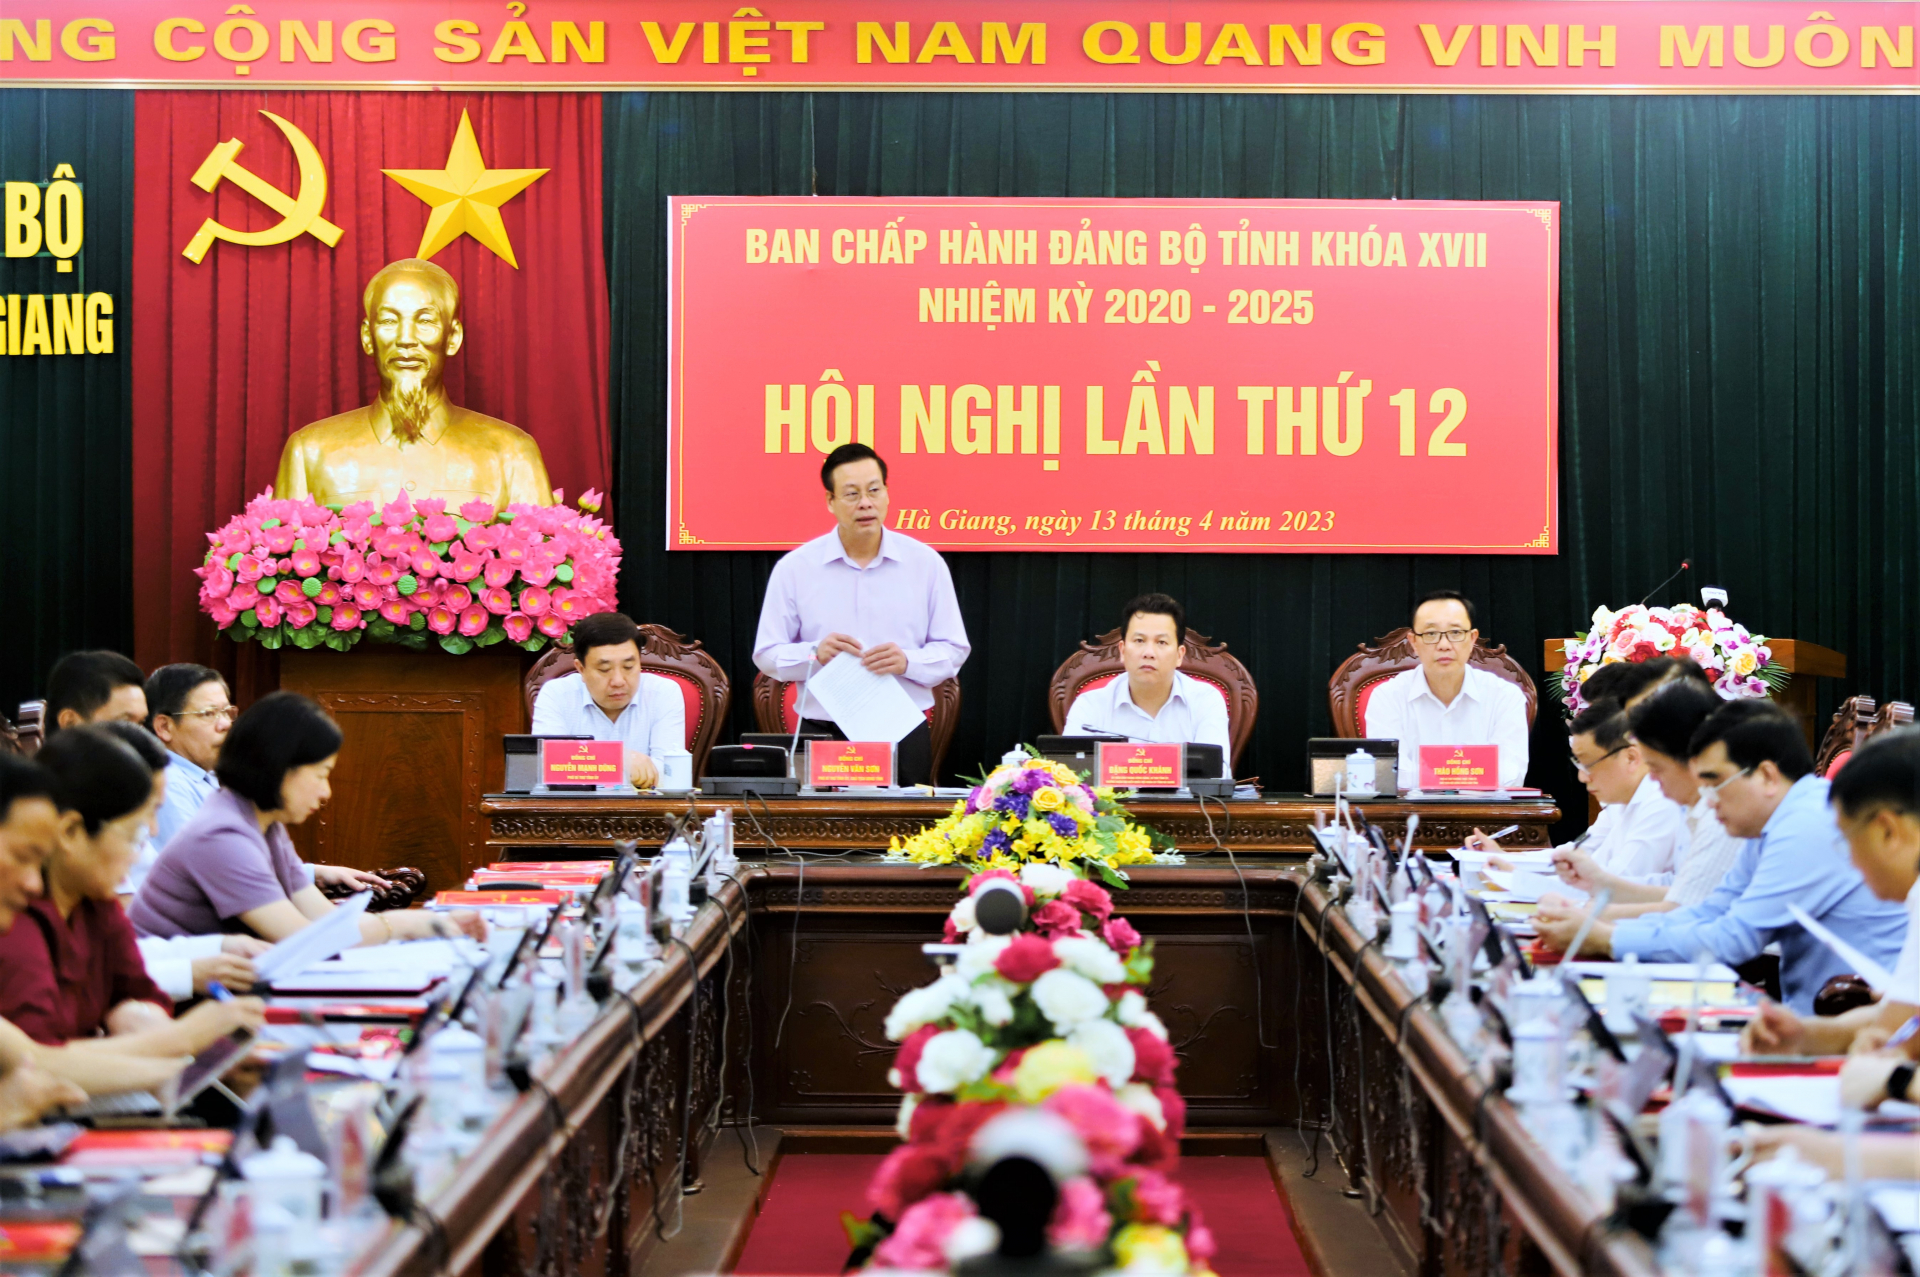 Chủ tịch UBND tỉnh Nguyễn Văn Sơn điều hành phần thảo luận trong phiên họp buổi chiều